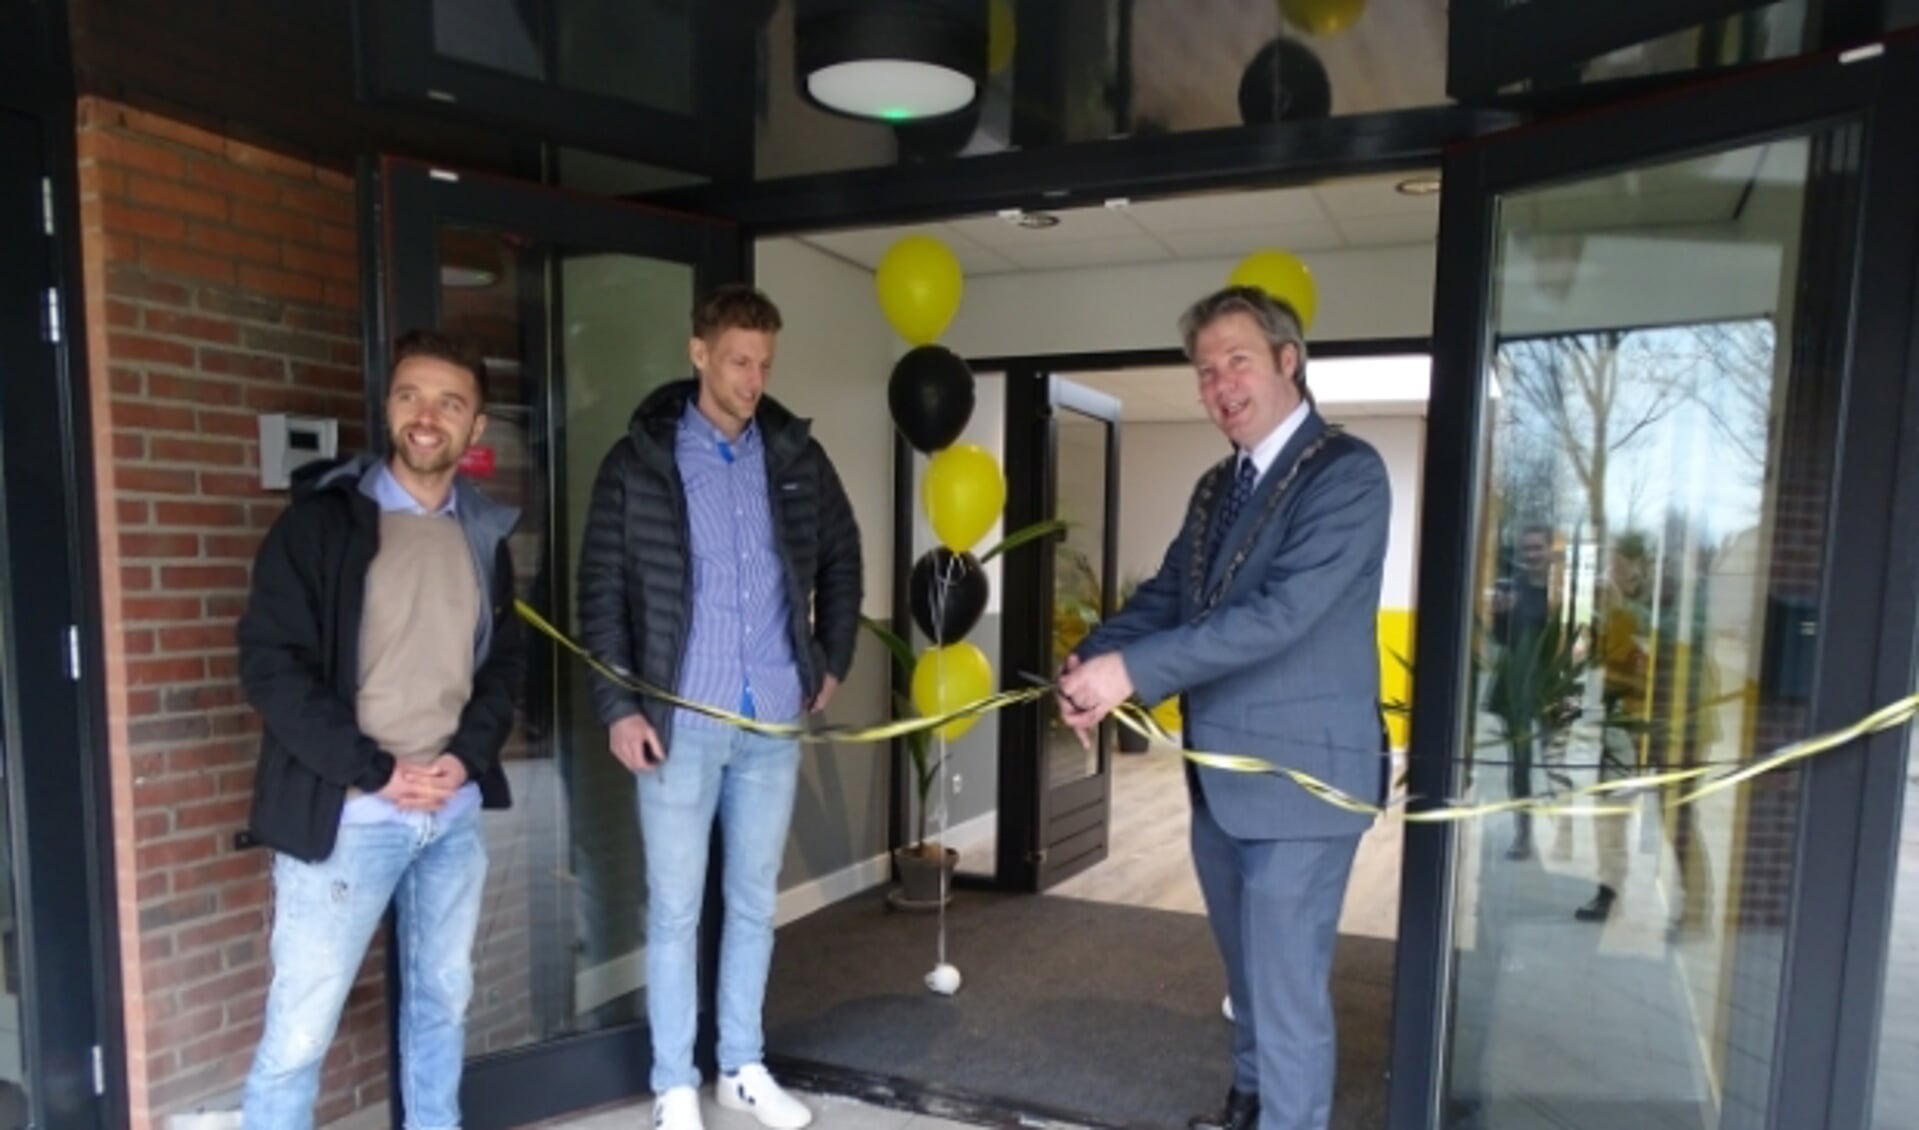 Burgemeester Danny de Vries opende vrijdag 2 april officieel het nieuwe pand van de YellowBellies. Danny Muijs en Mark van Bentum kijken toe.